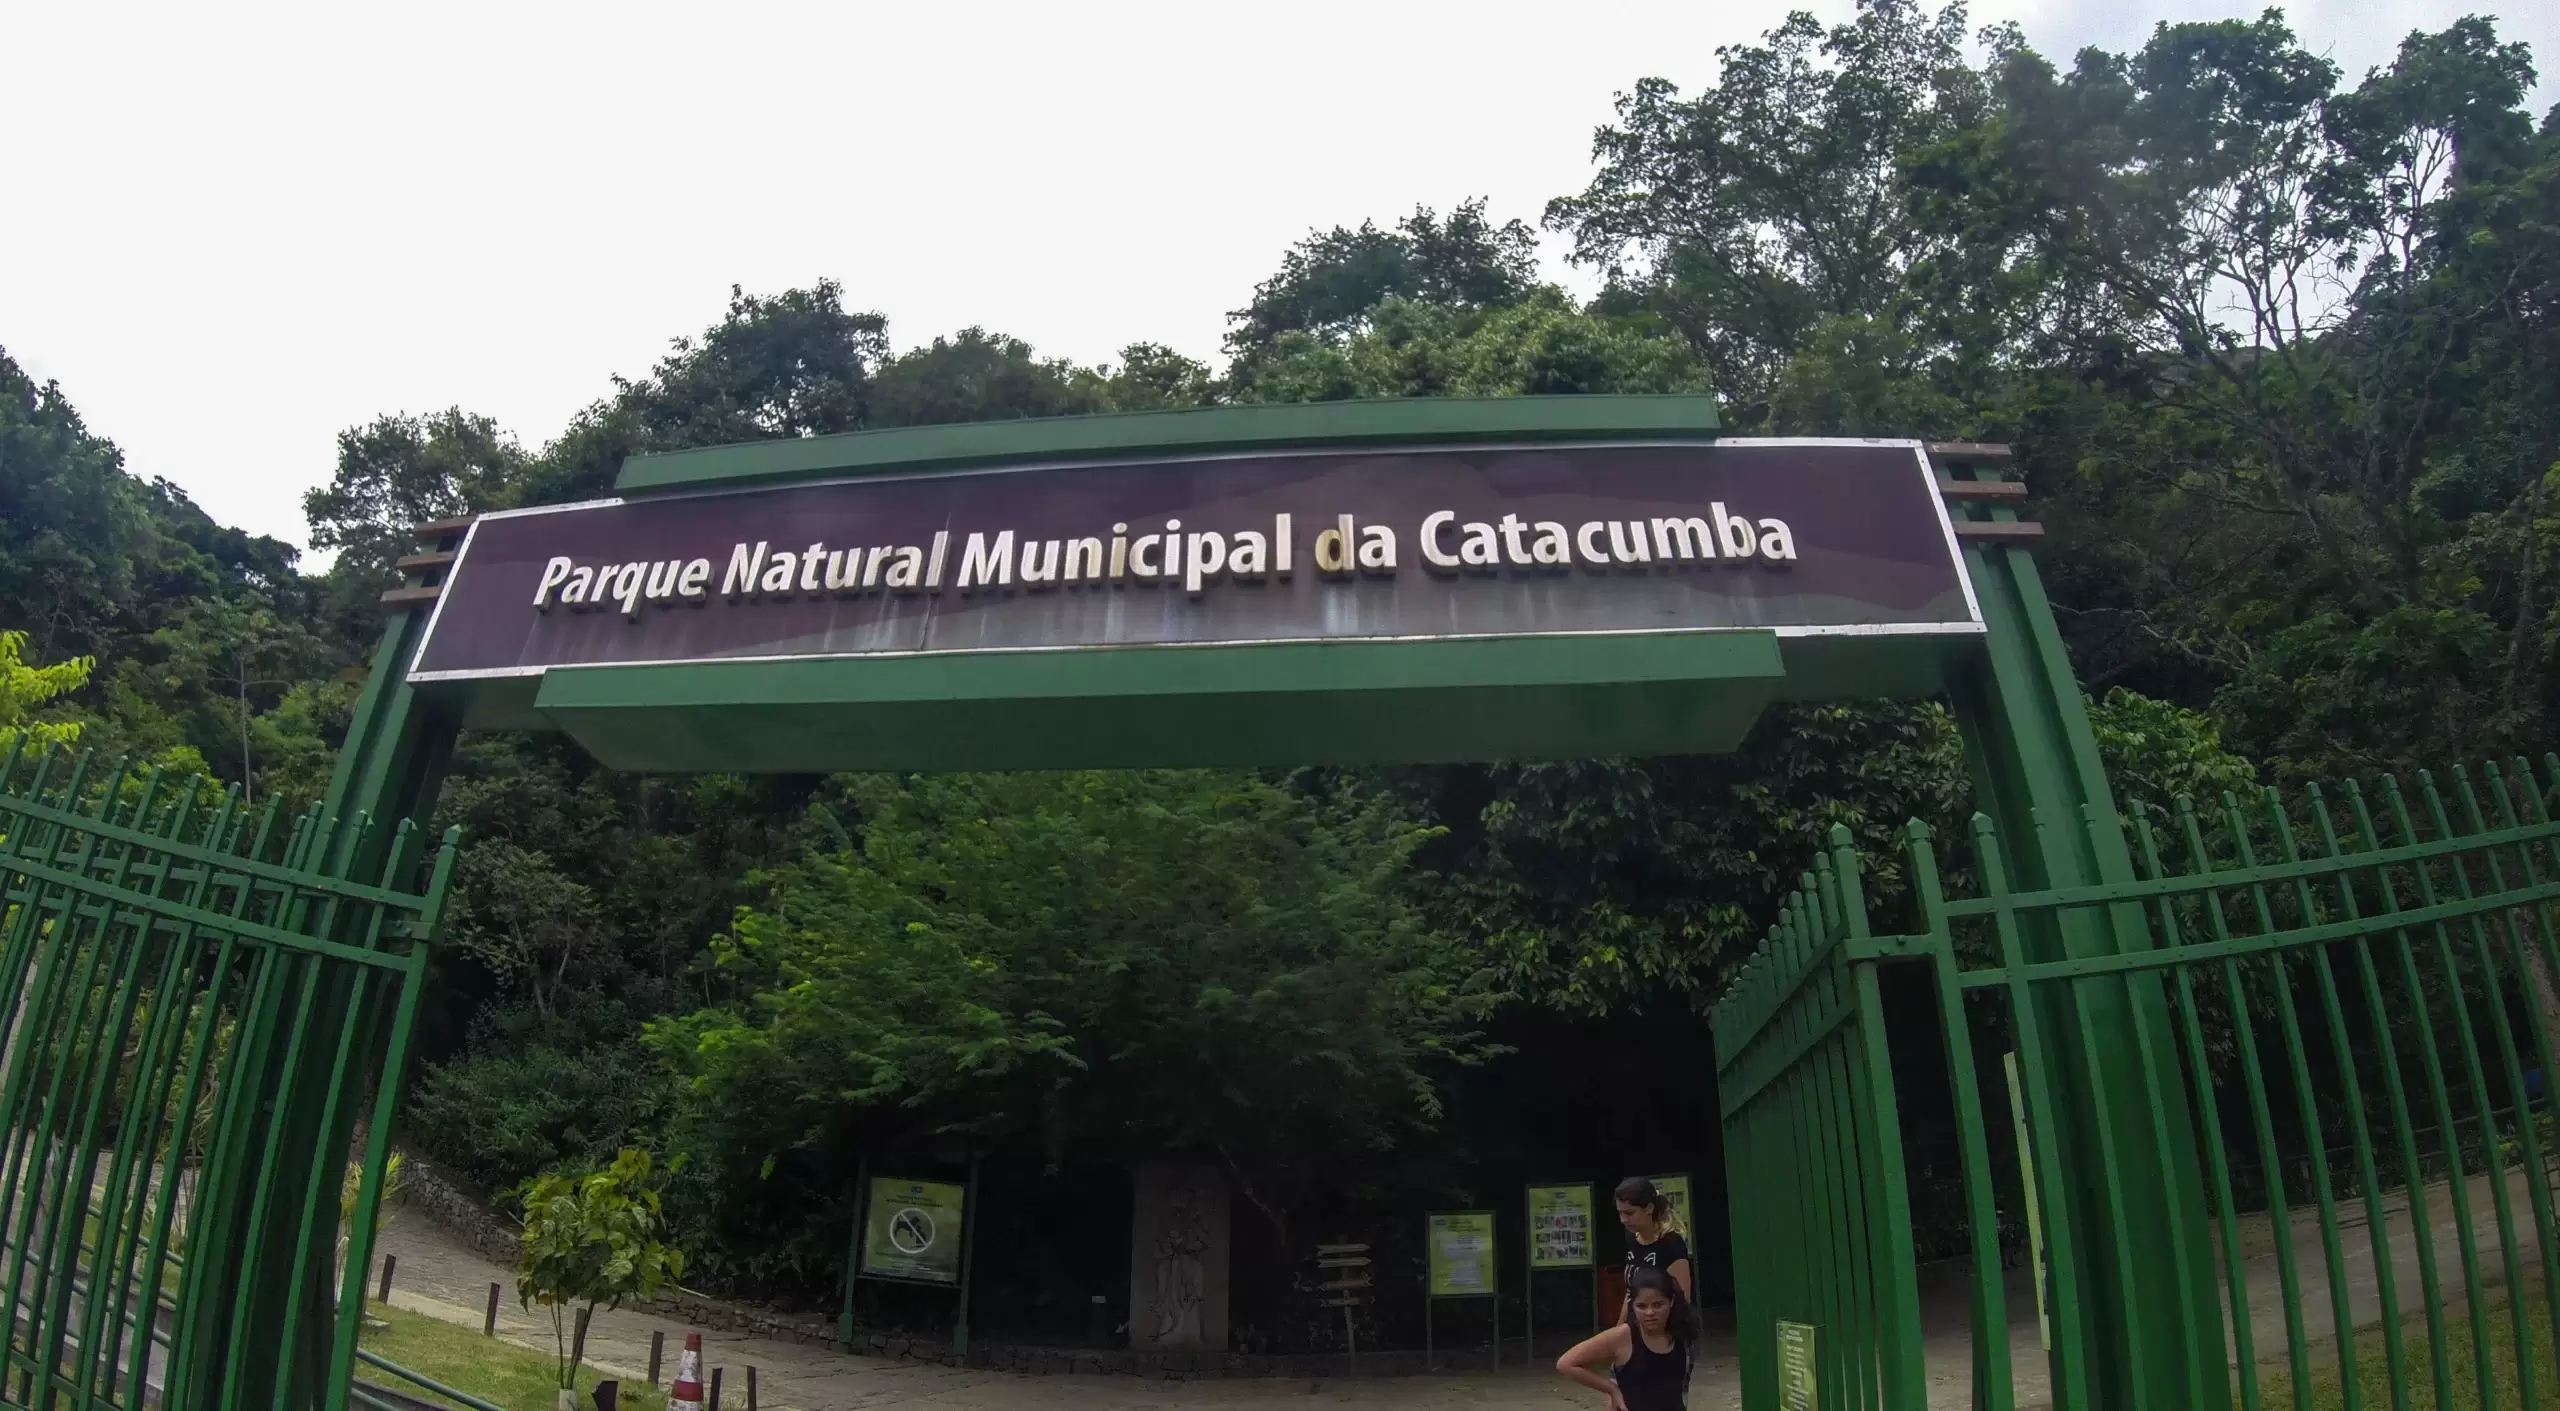 Parque Natural Municipal da Catacumba scaled